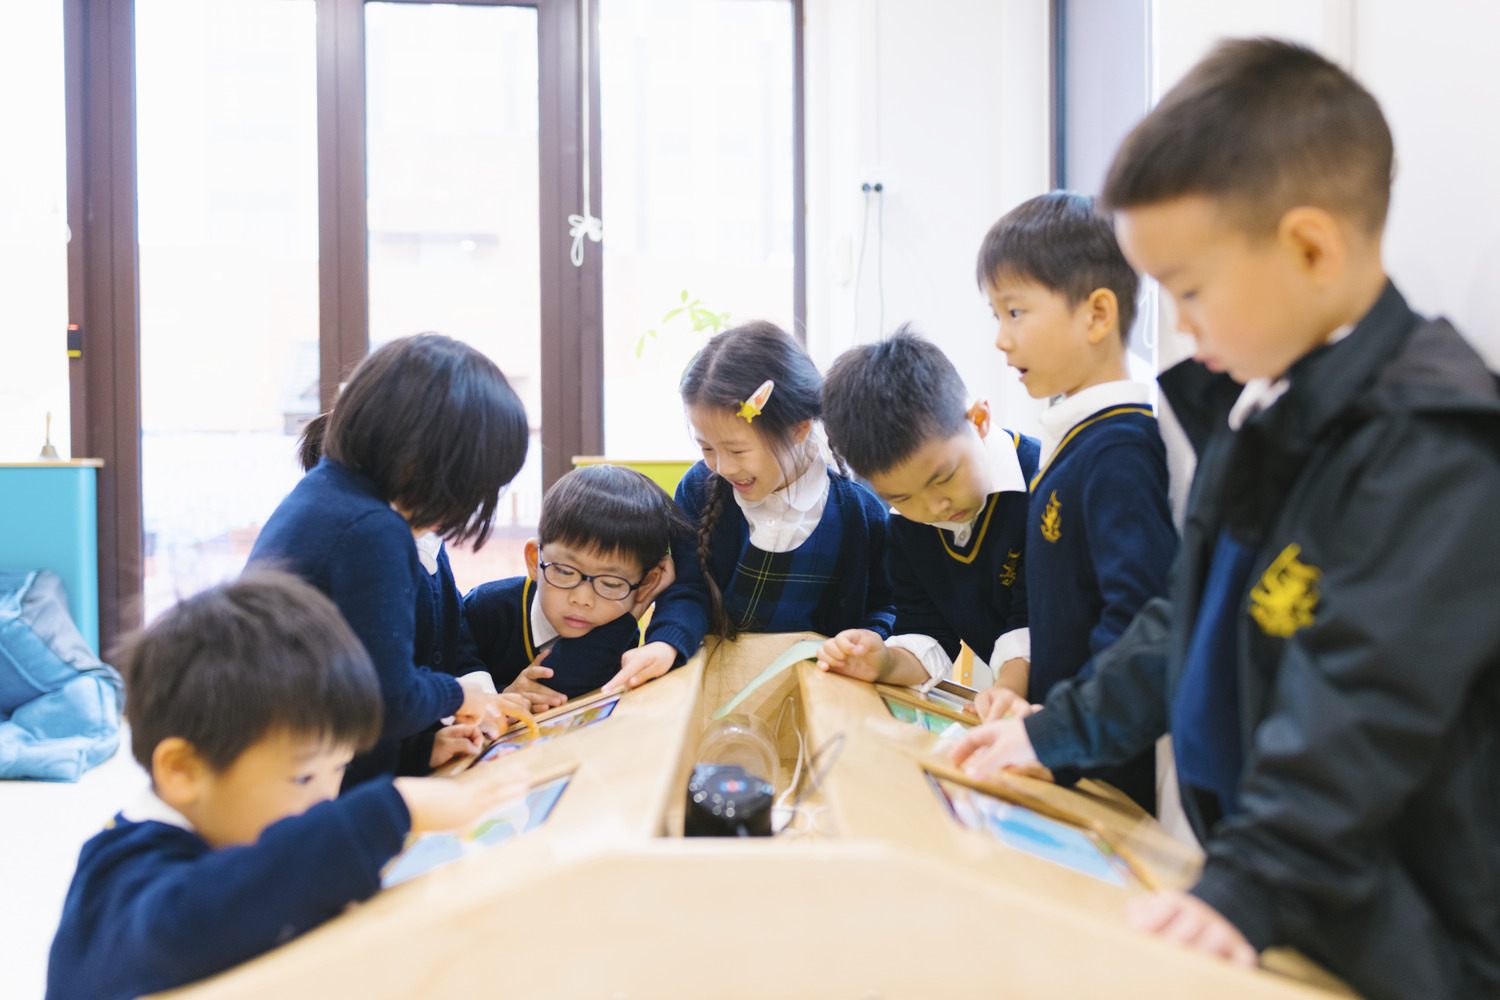 上海惠立幼儿园双语教育模式